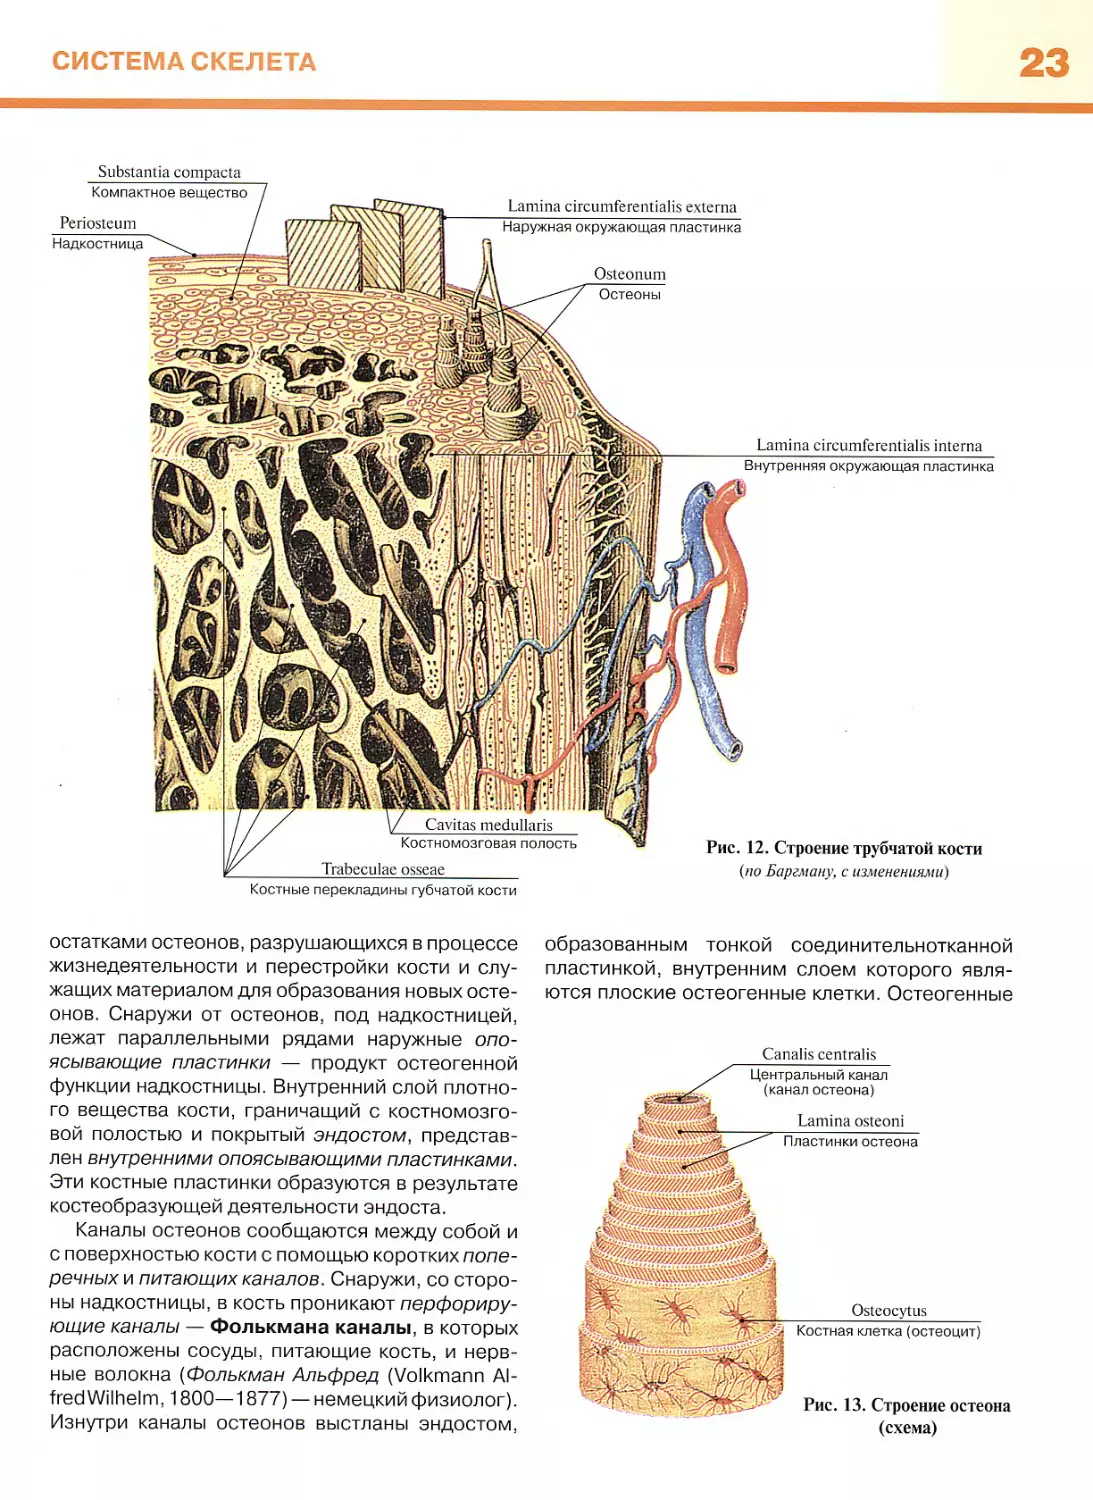 Мышцы задней стенки брюшной полости
Функции мышц живота